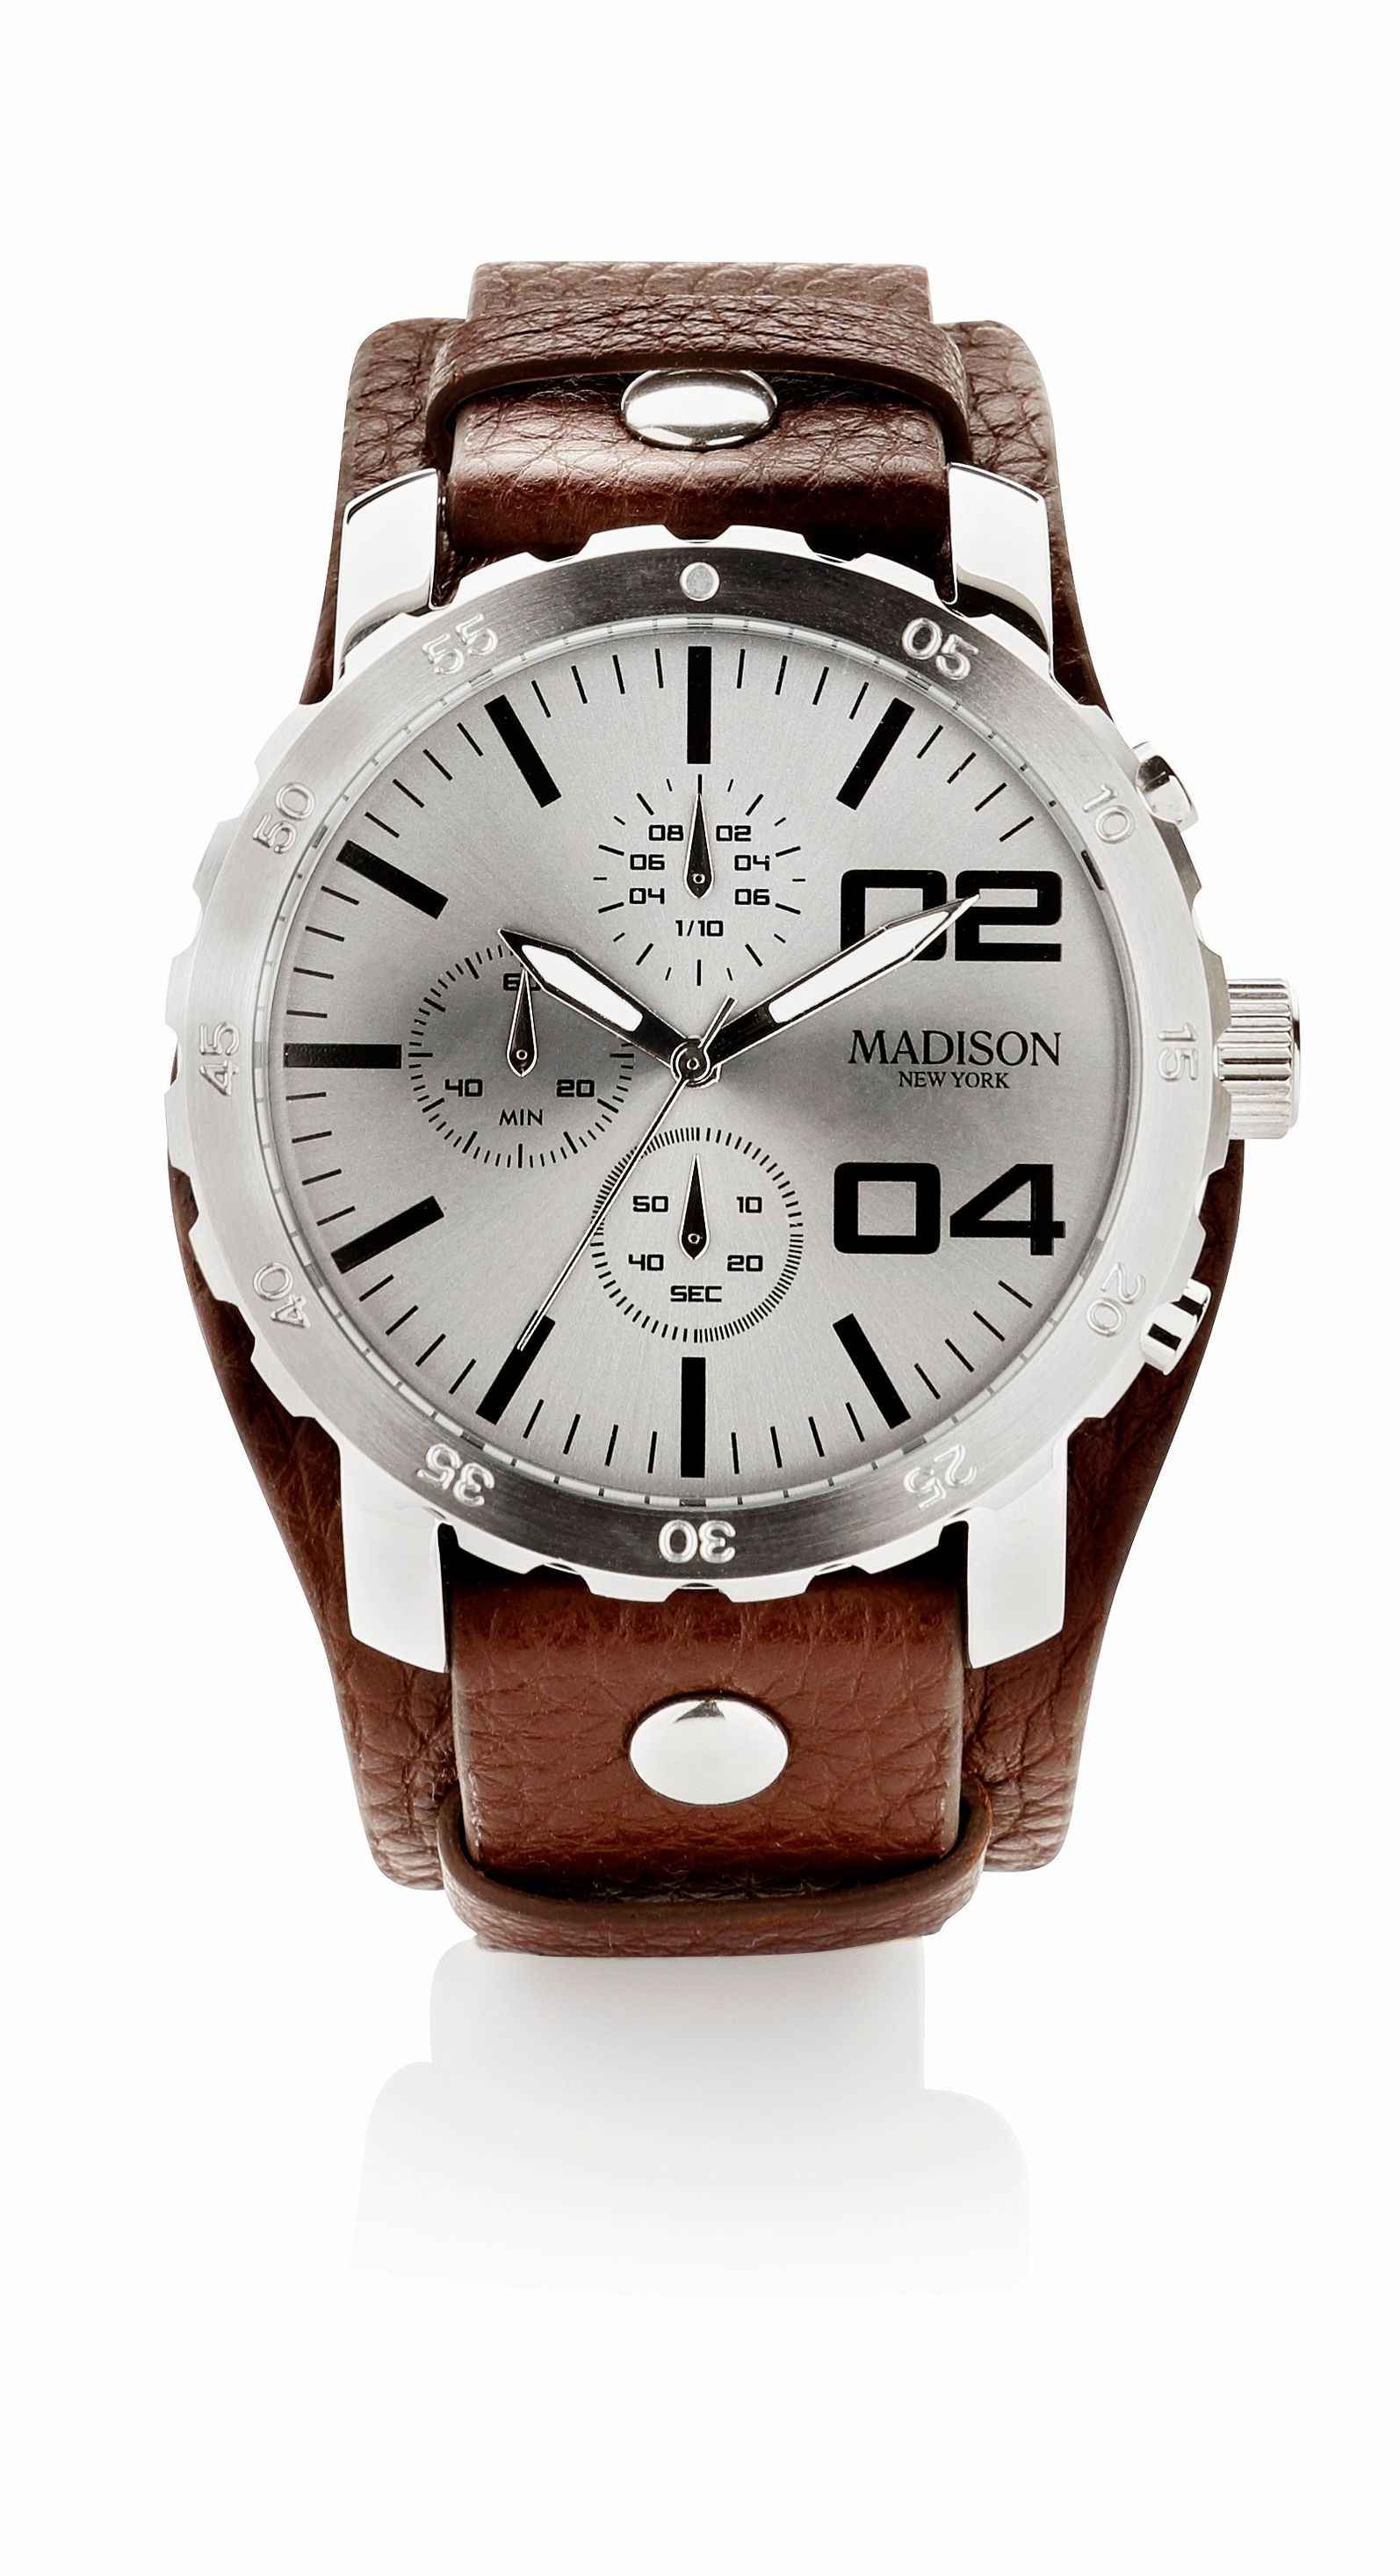 Madison Herren Chronograph Armbanduhr mit Lederarmband | Weltbild.at